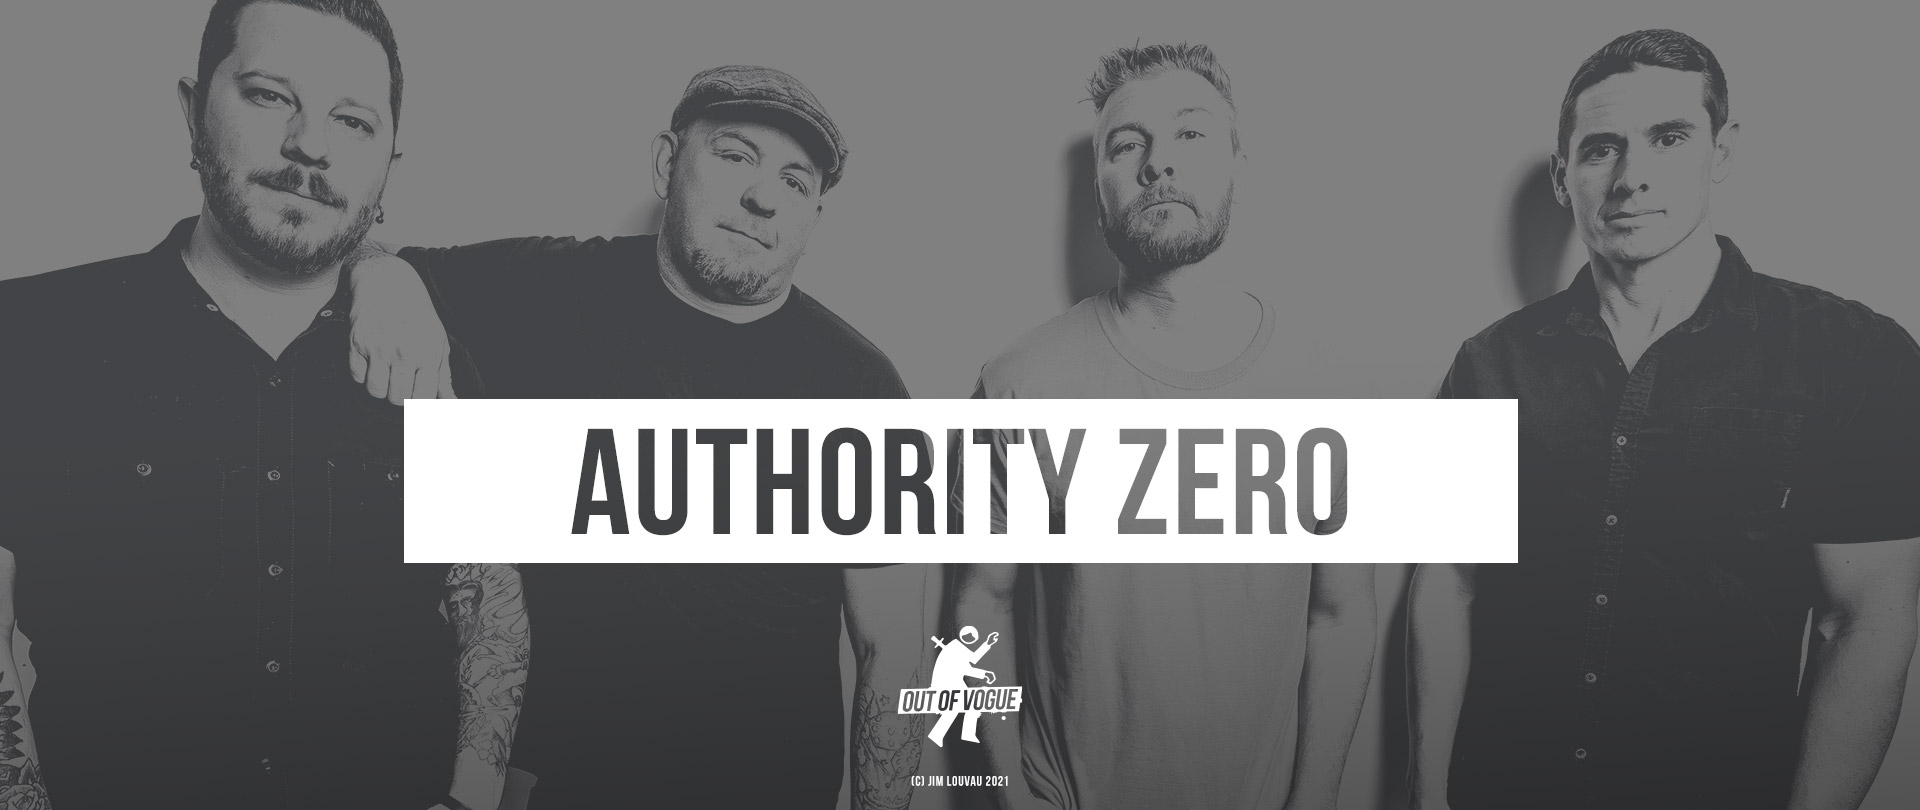 Authority Zero at OUT OF VOGUE SHOP / DE